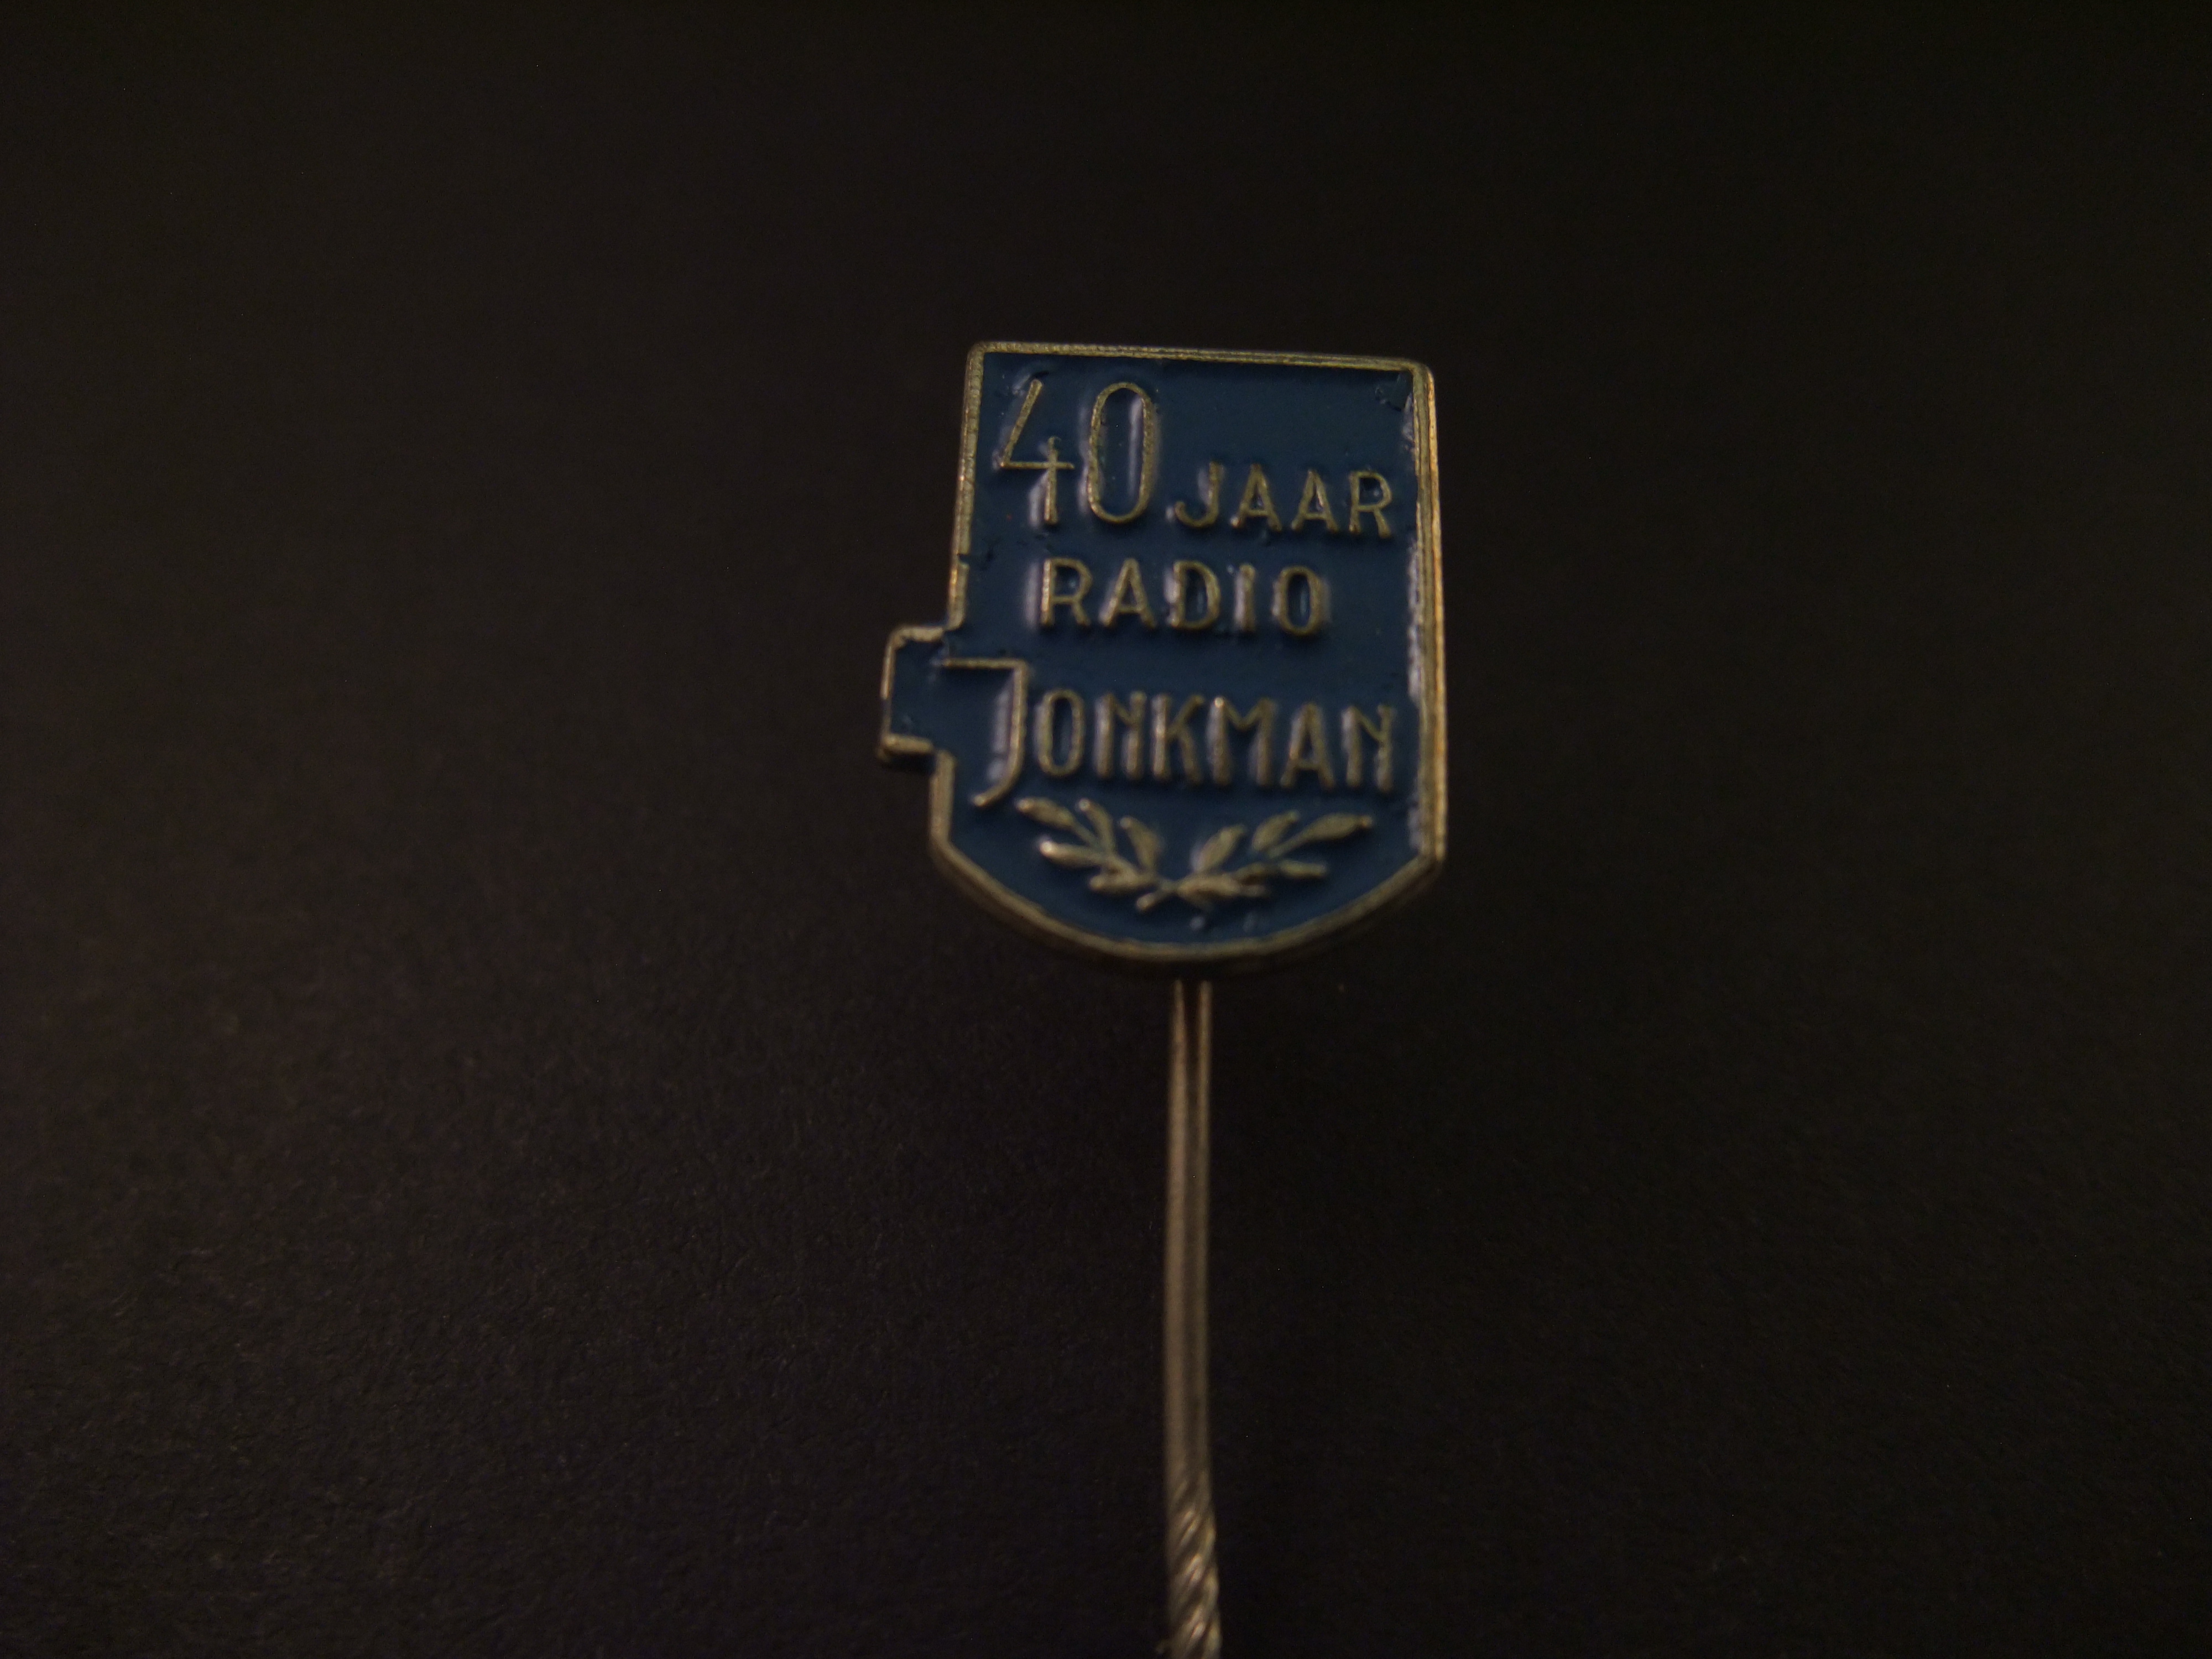 Radio Jonkman, Oosterweg Groningen 40 jarig jubileum, blauw